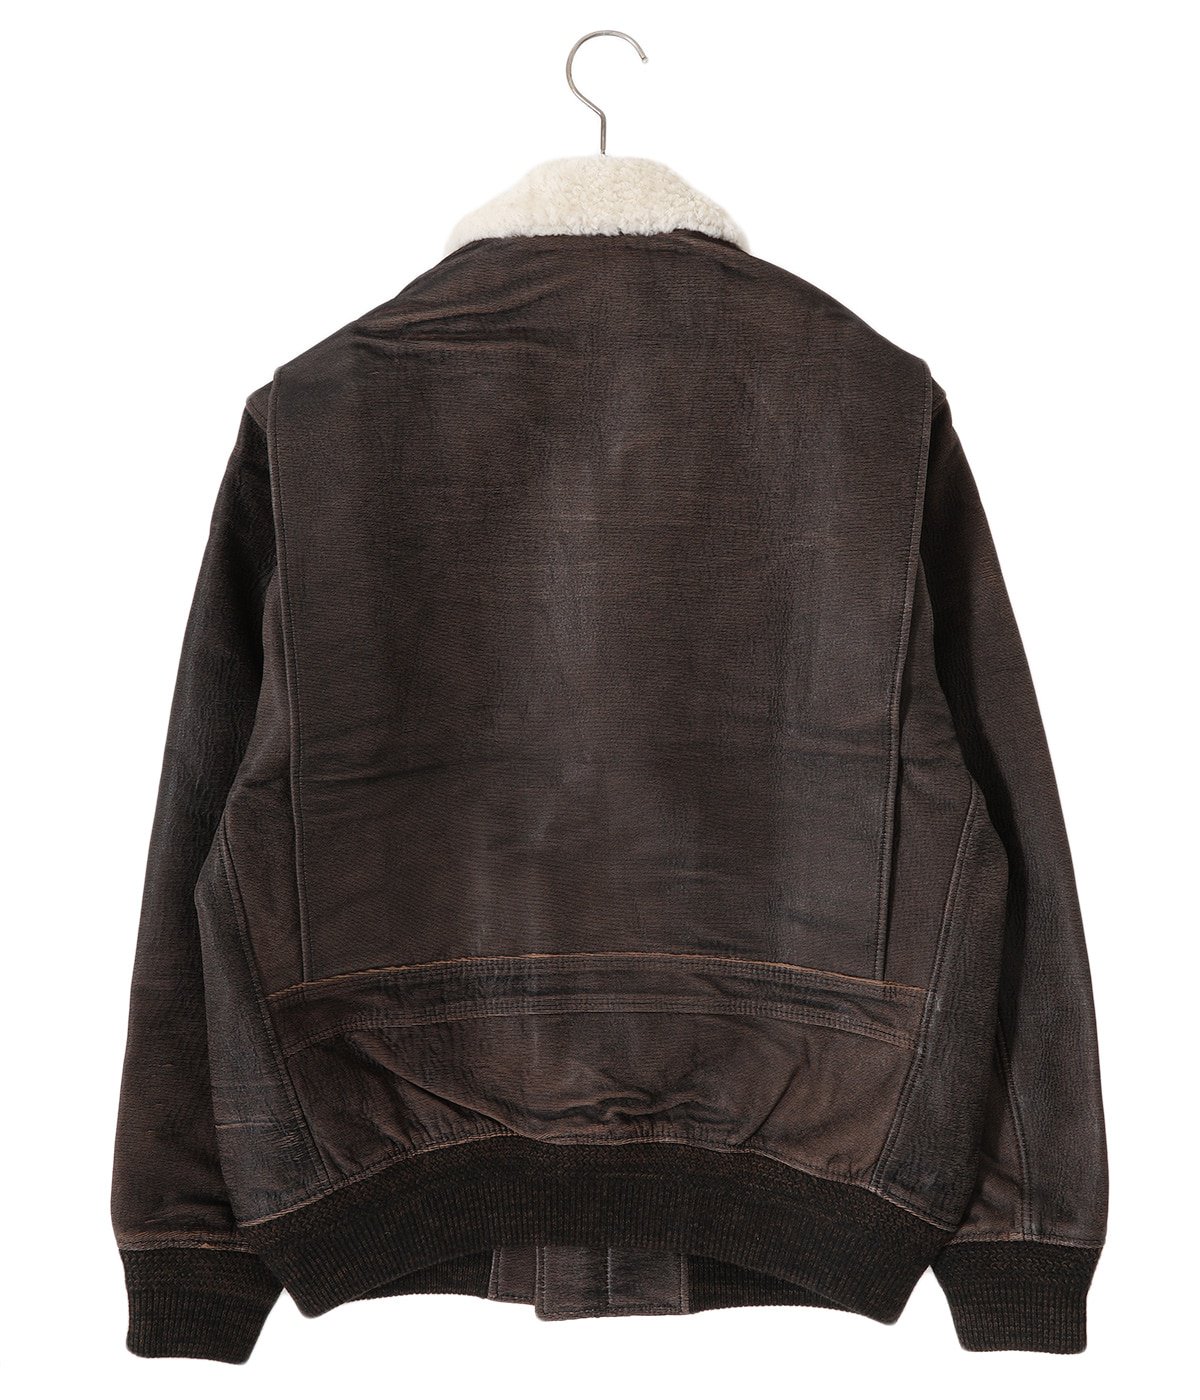 フライトジャケットsugarhill gill leather g-1 jacket - フライト 